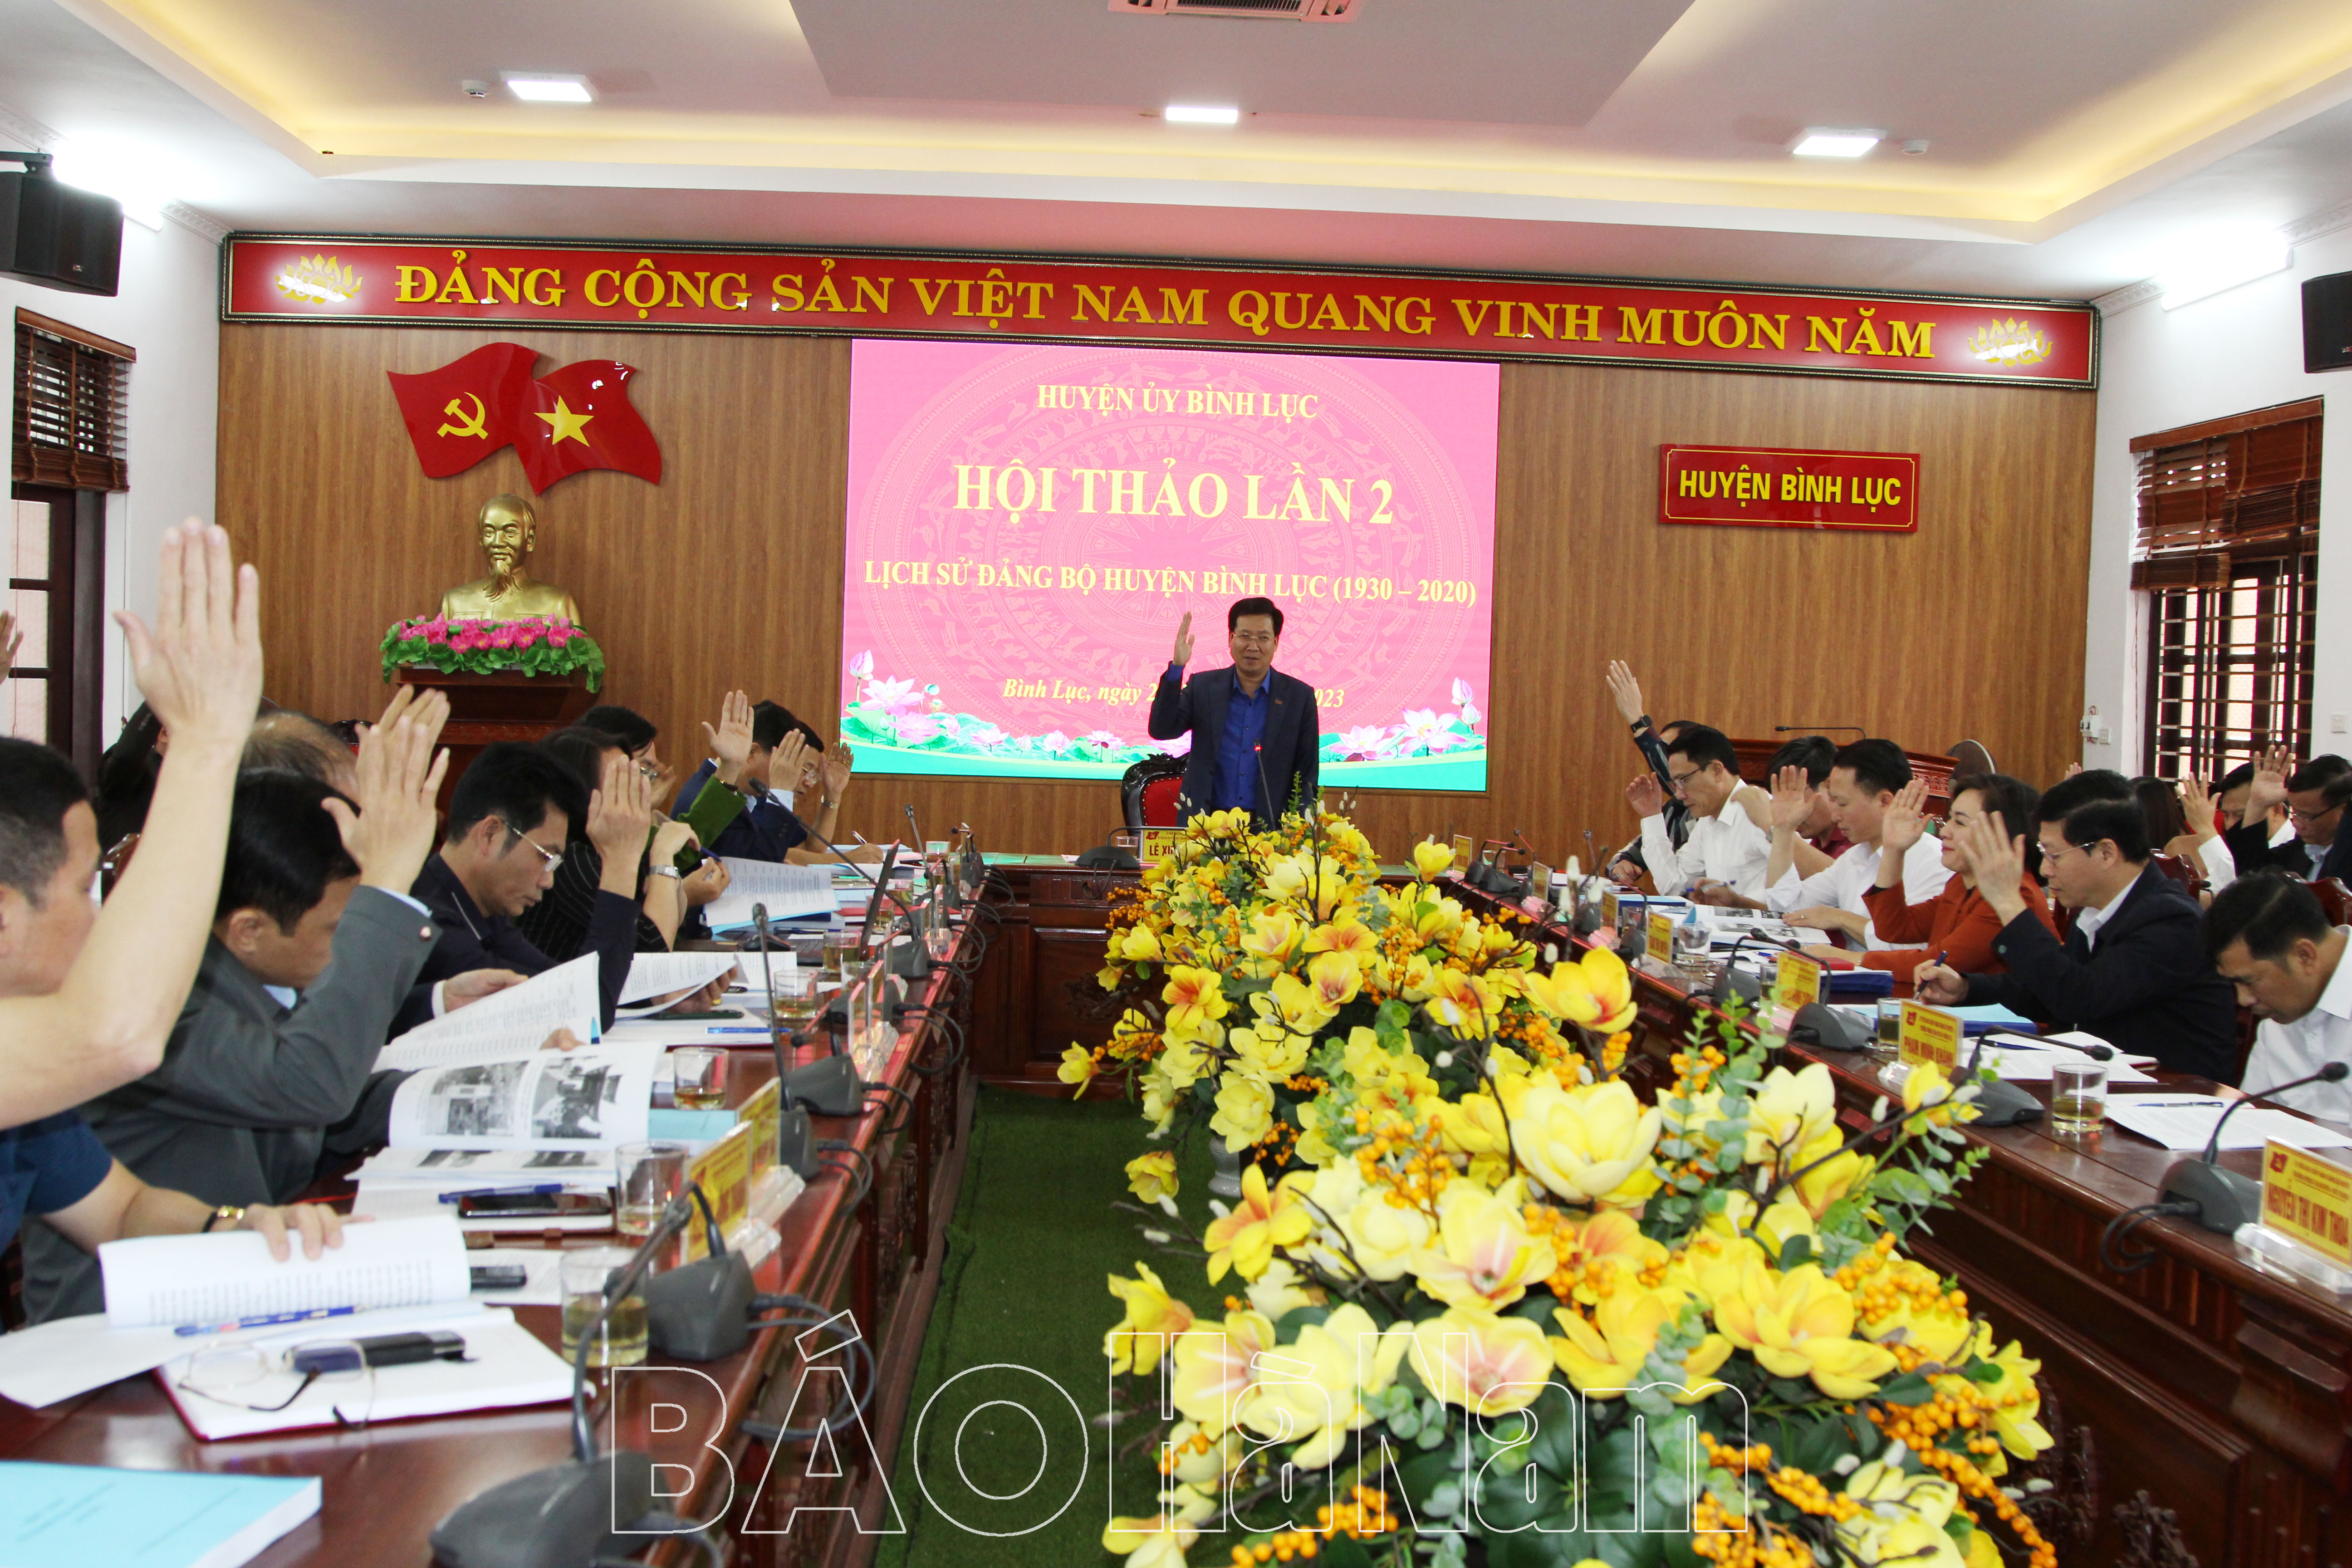 Huyện ủy Bình Lục tổ chức Hội thảo lần 2 Lịch sử Đảng bộ huyện Bình Lục 19302020